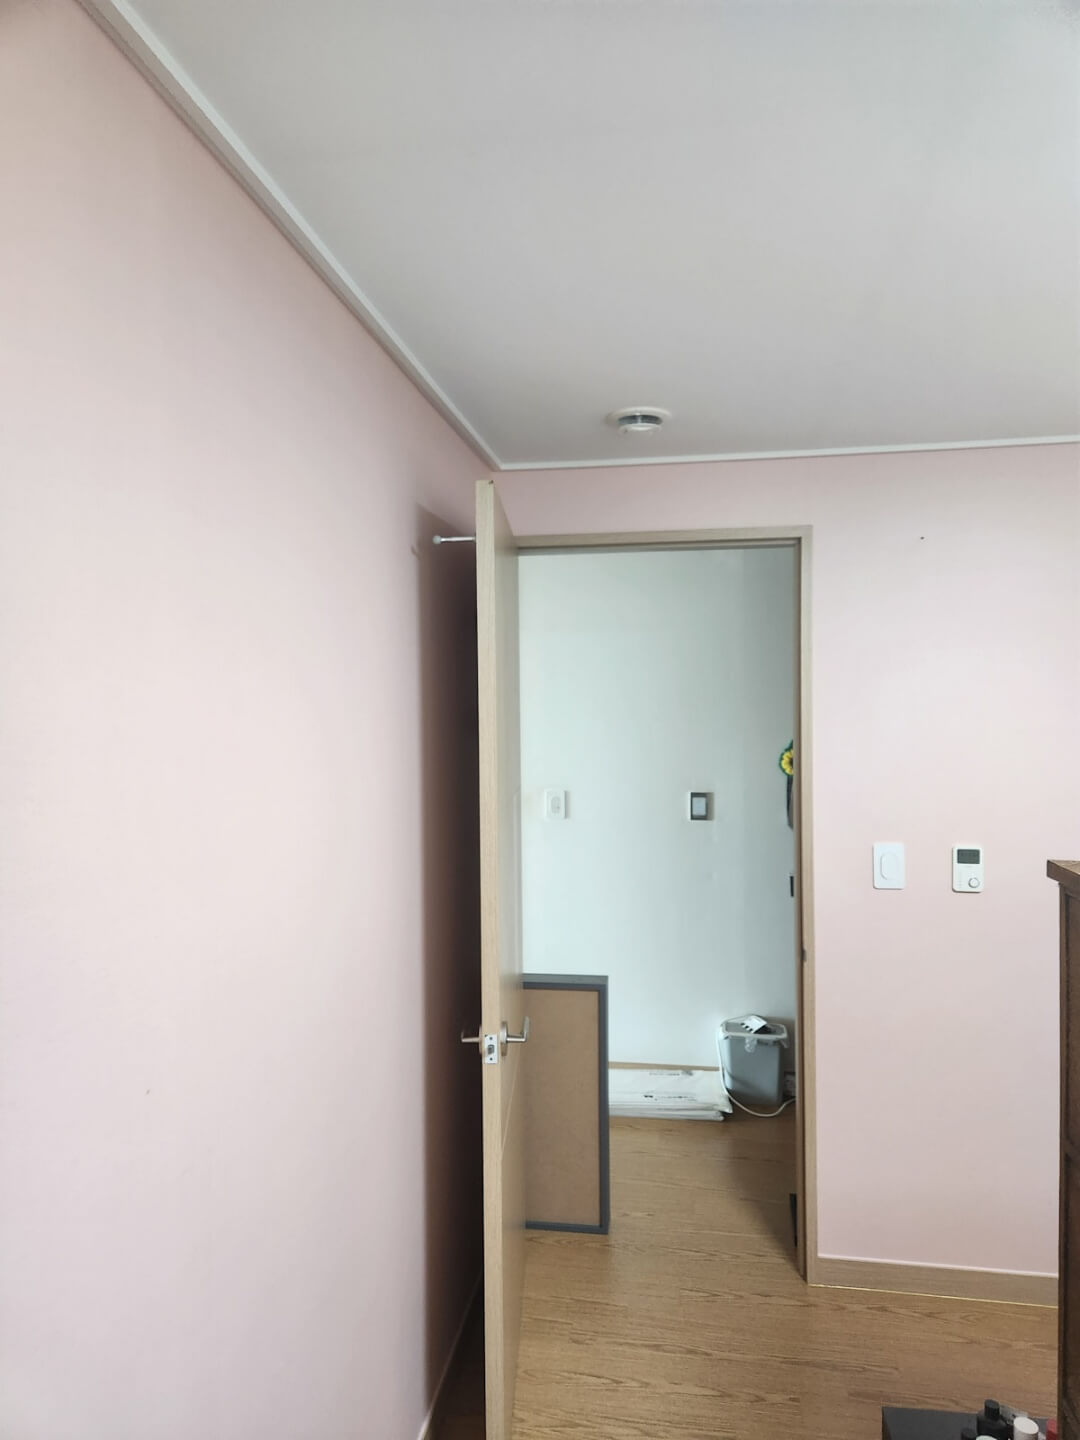 도배를 진행할 분홍색 벽지 방의 입구사진이다